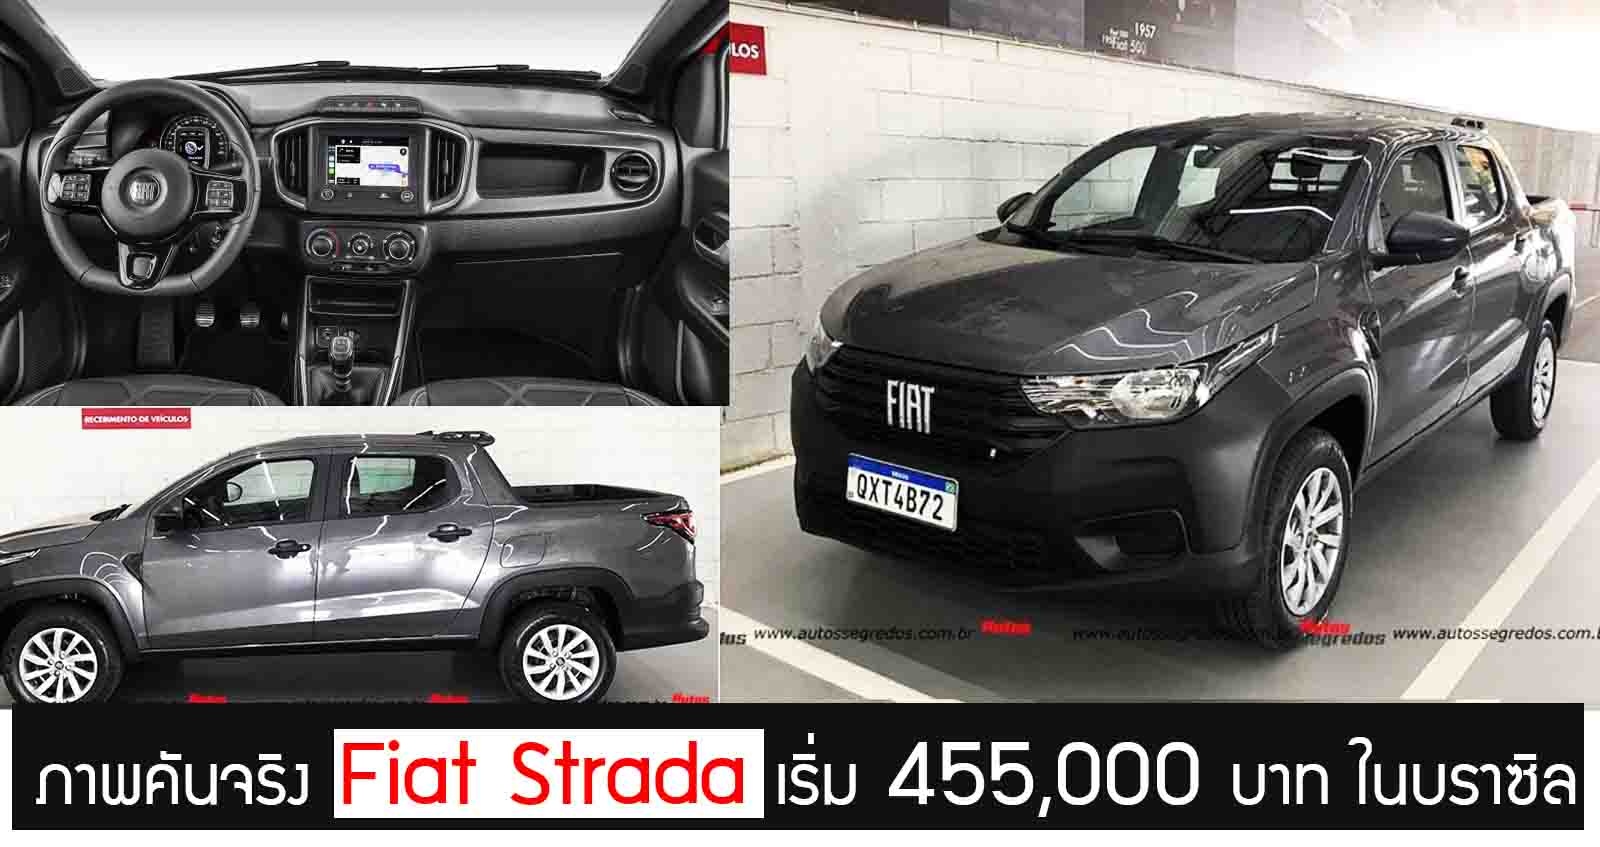 ภาพคันจริง Fiat Strada กระบะเล็ก ราคาเริ่ม 455,000 บาท ในบราซิล